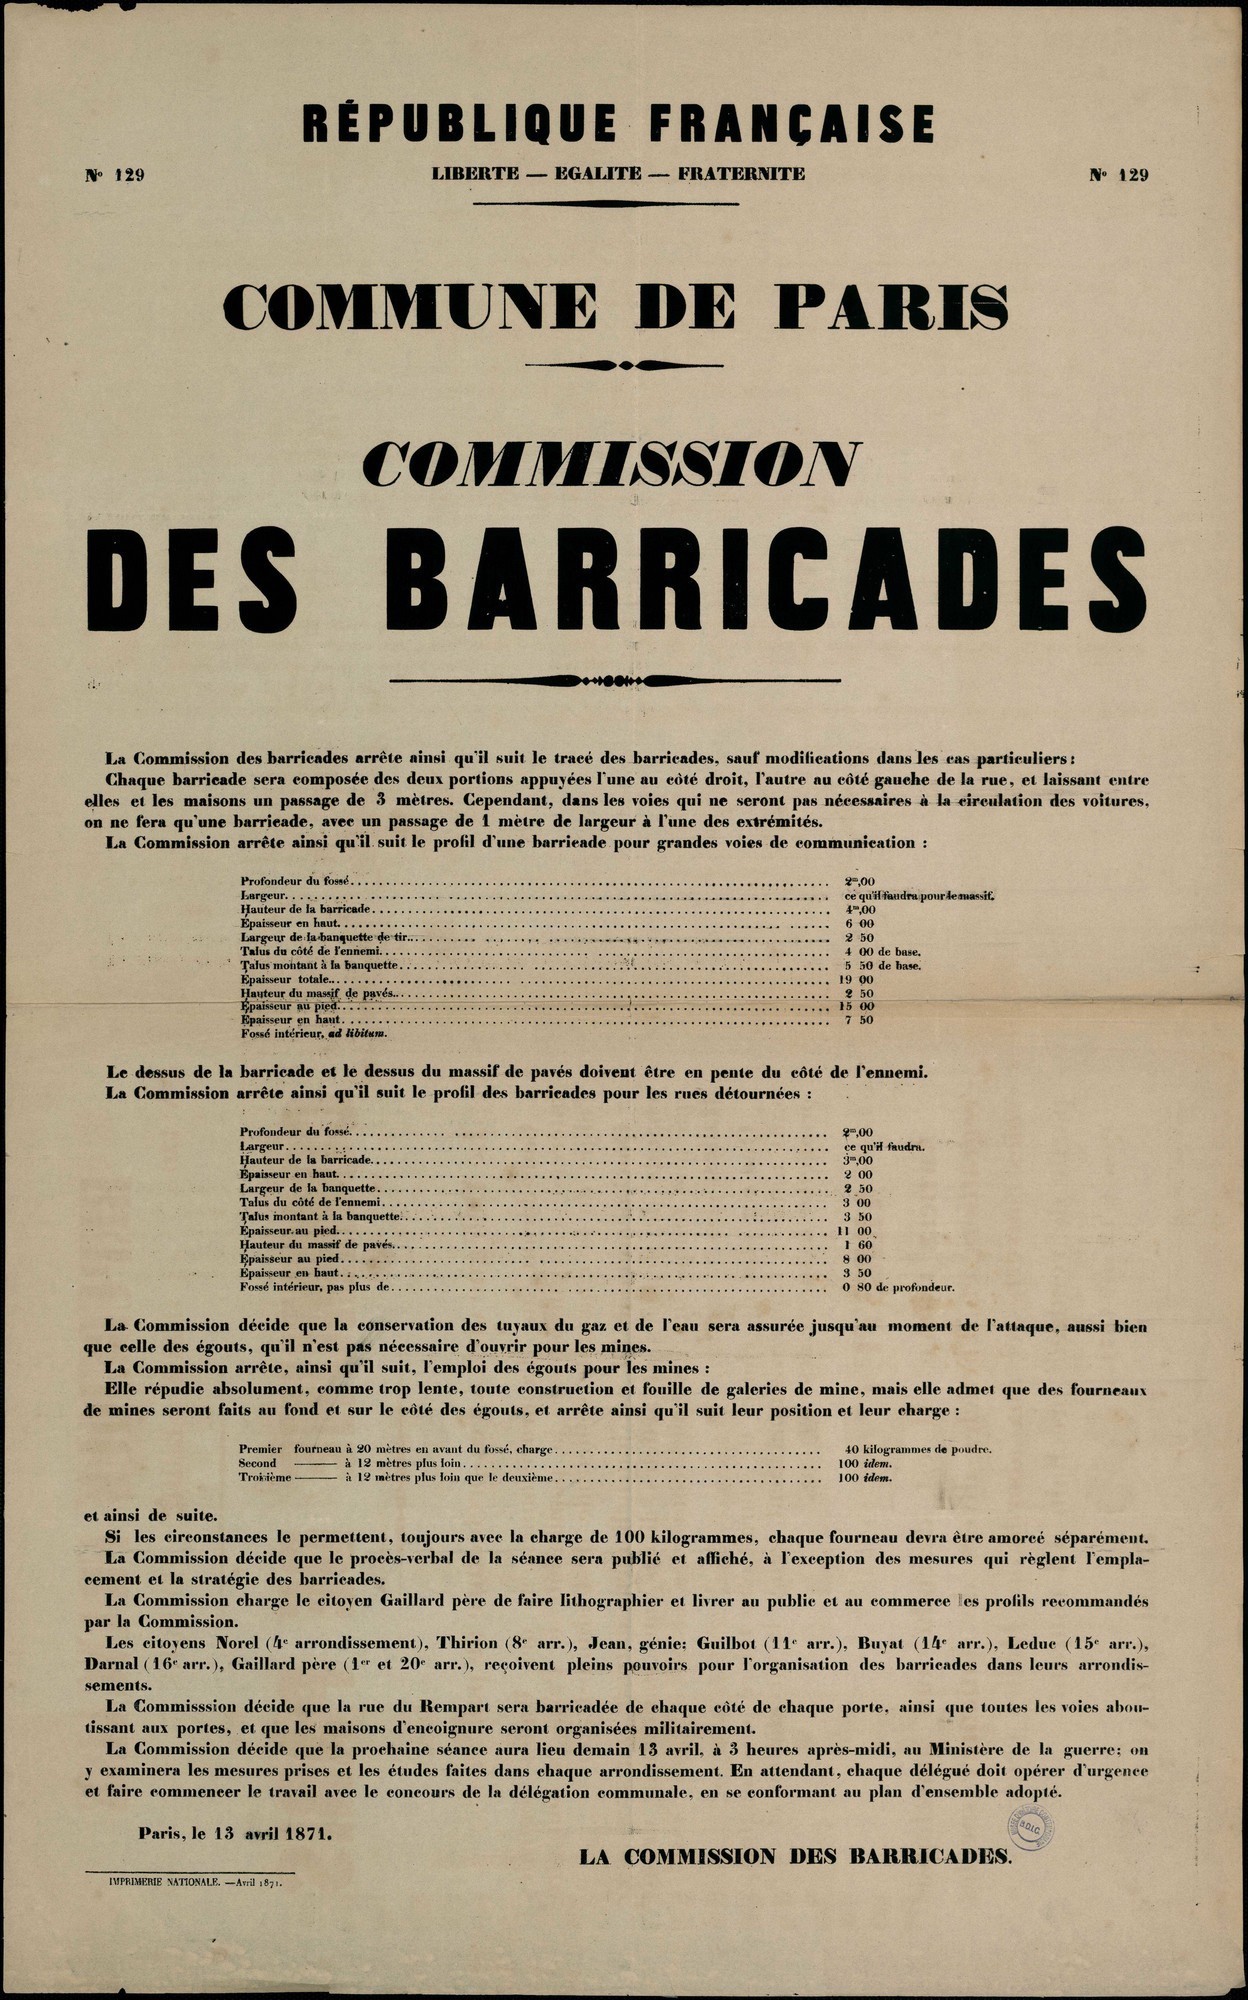 Affiche de la Commune de Paris N° 129 du 13 avril 1871 - Commission des barricades  (source : La Contemporaine – Nanterre / argonnaute.parisnanterre.fr)